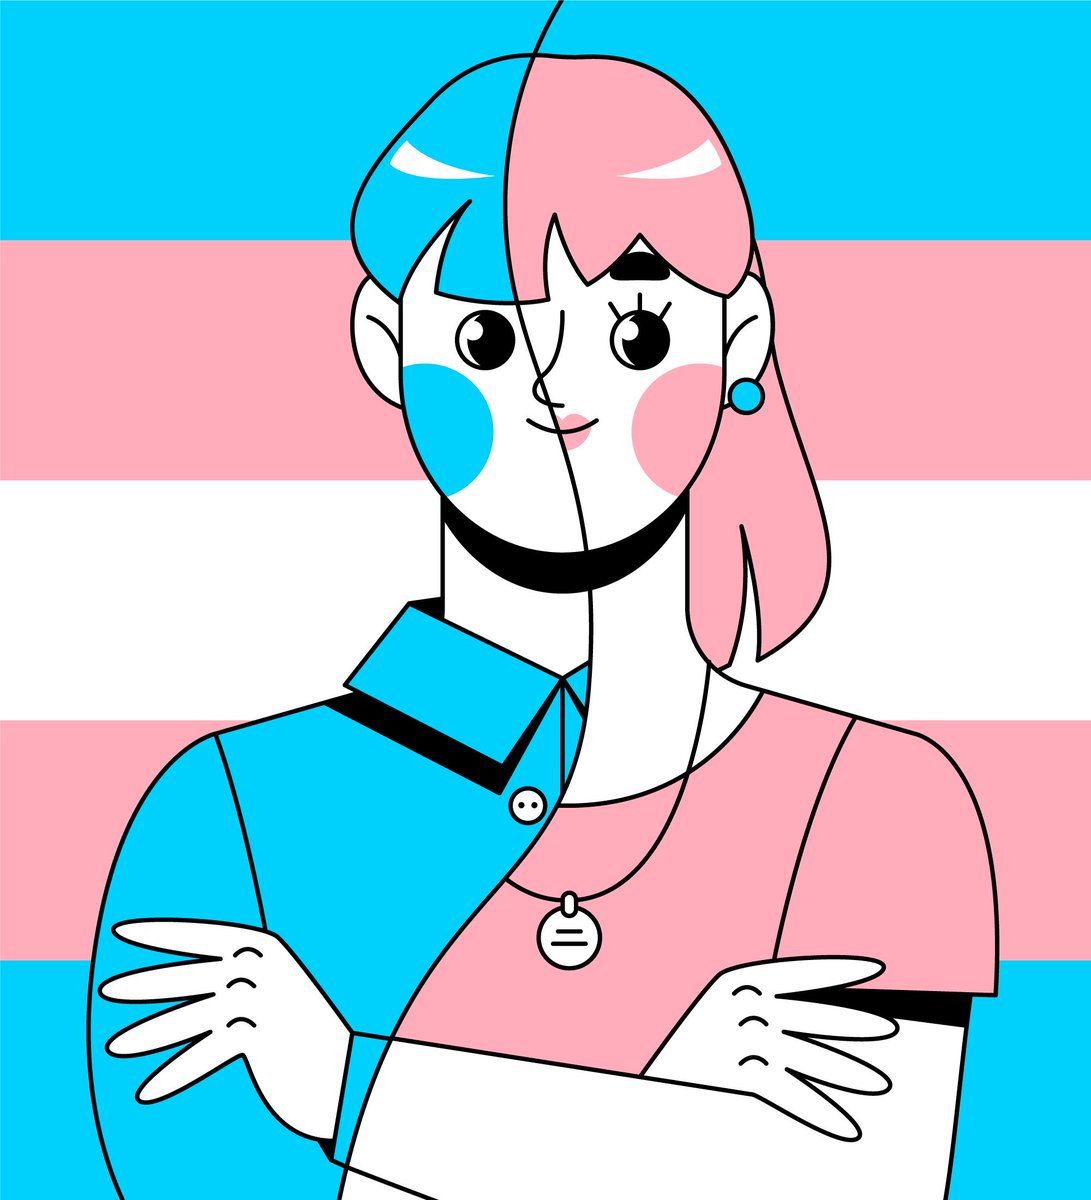 Hablemos un poco sobre la #identidaddegénero y las personas #trans 👉 bit.ly/3ZwsMKf